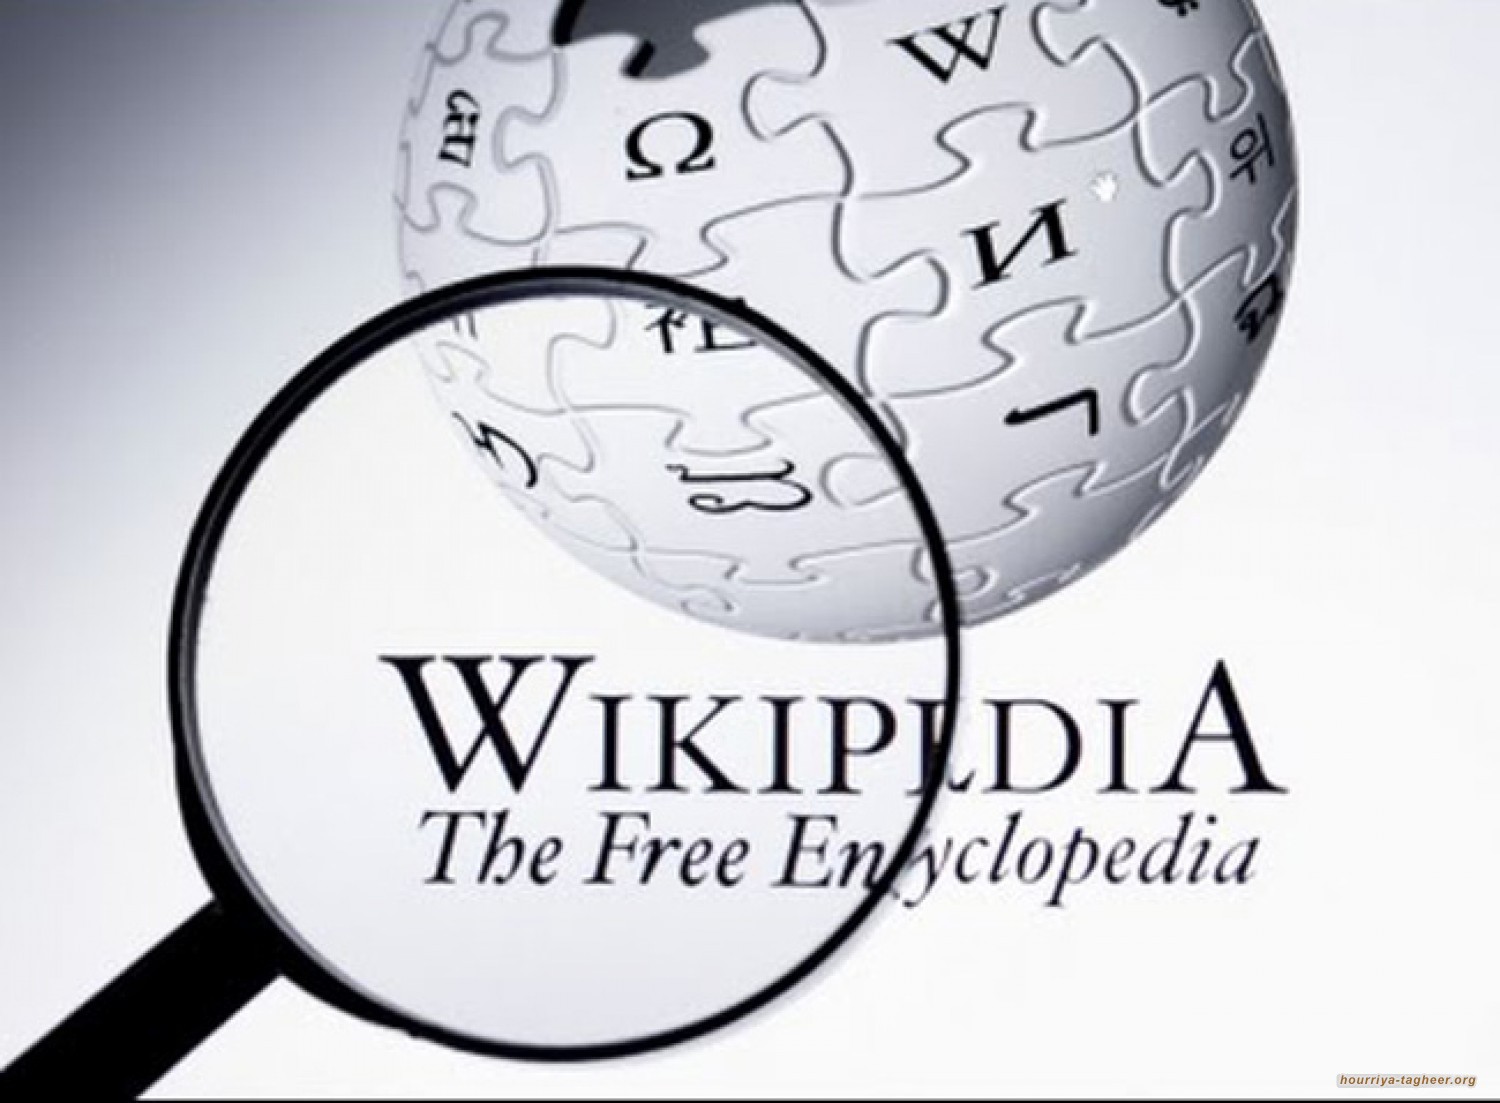 السلطات السعودية تسللت لـ ويكيبيديا وزرعت محررين كجواسيس